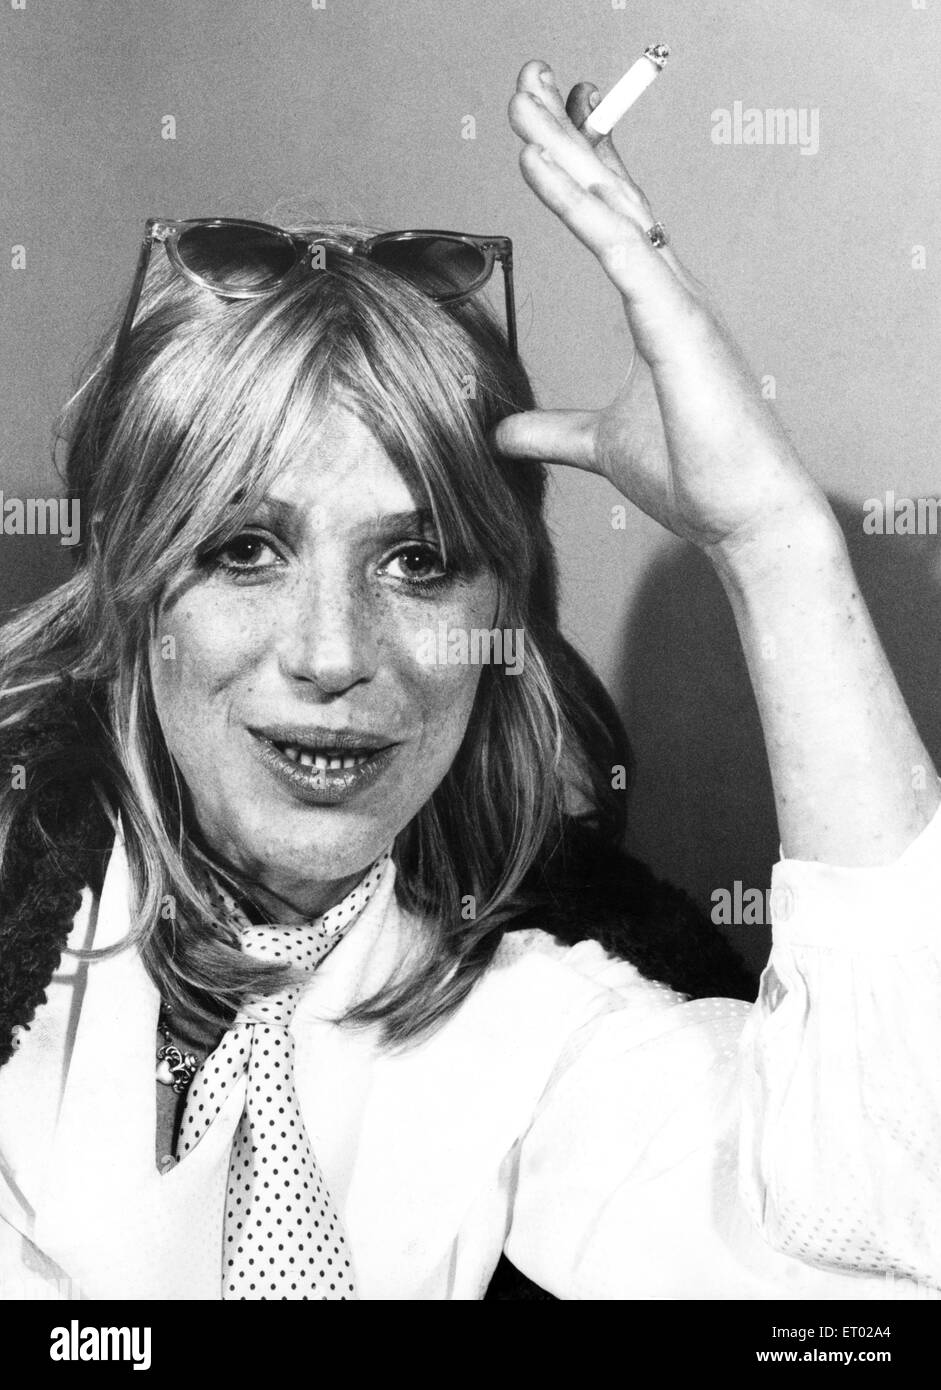 Marianne fidato promuove il suo nuovo singolo "la ballata di Lucy Giordania" a Londra negli uffici della sua casa discografica. 11 dicembre 1979. Foto Stock